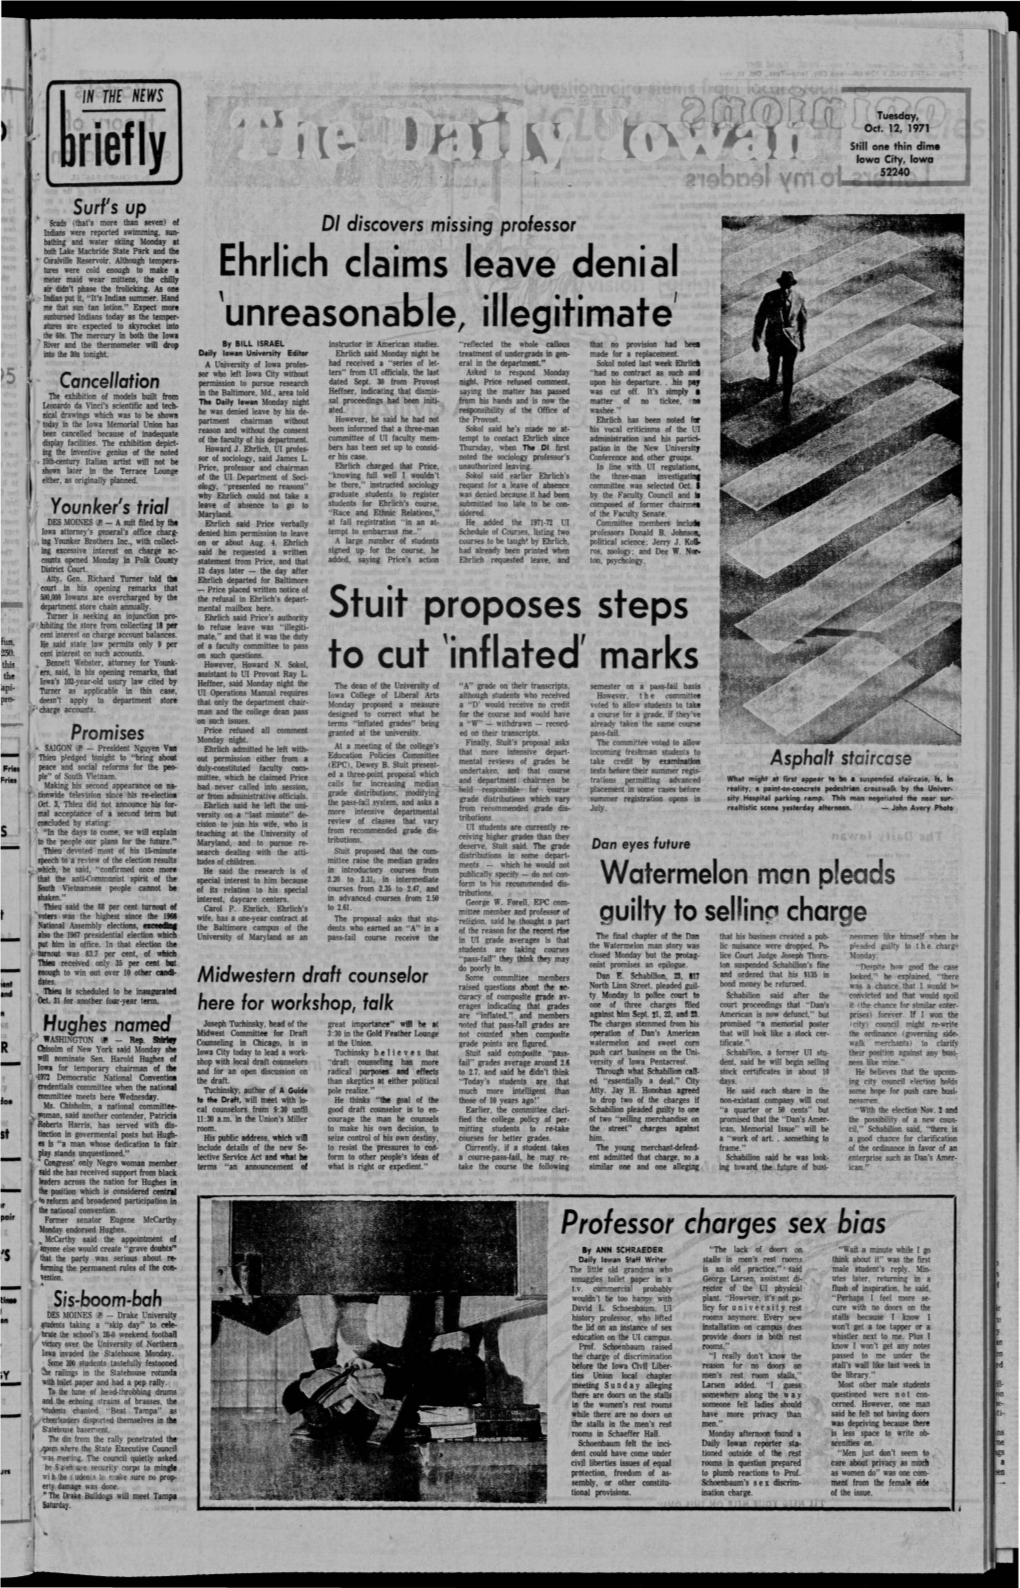 Daily Iowan (Iowa City, Iowa), 1971-10-12